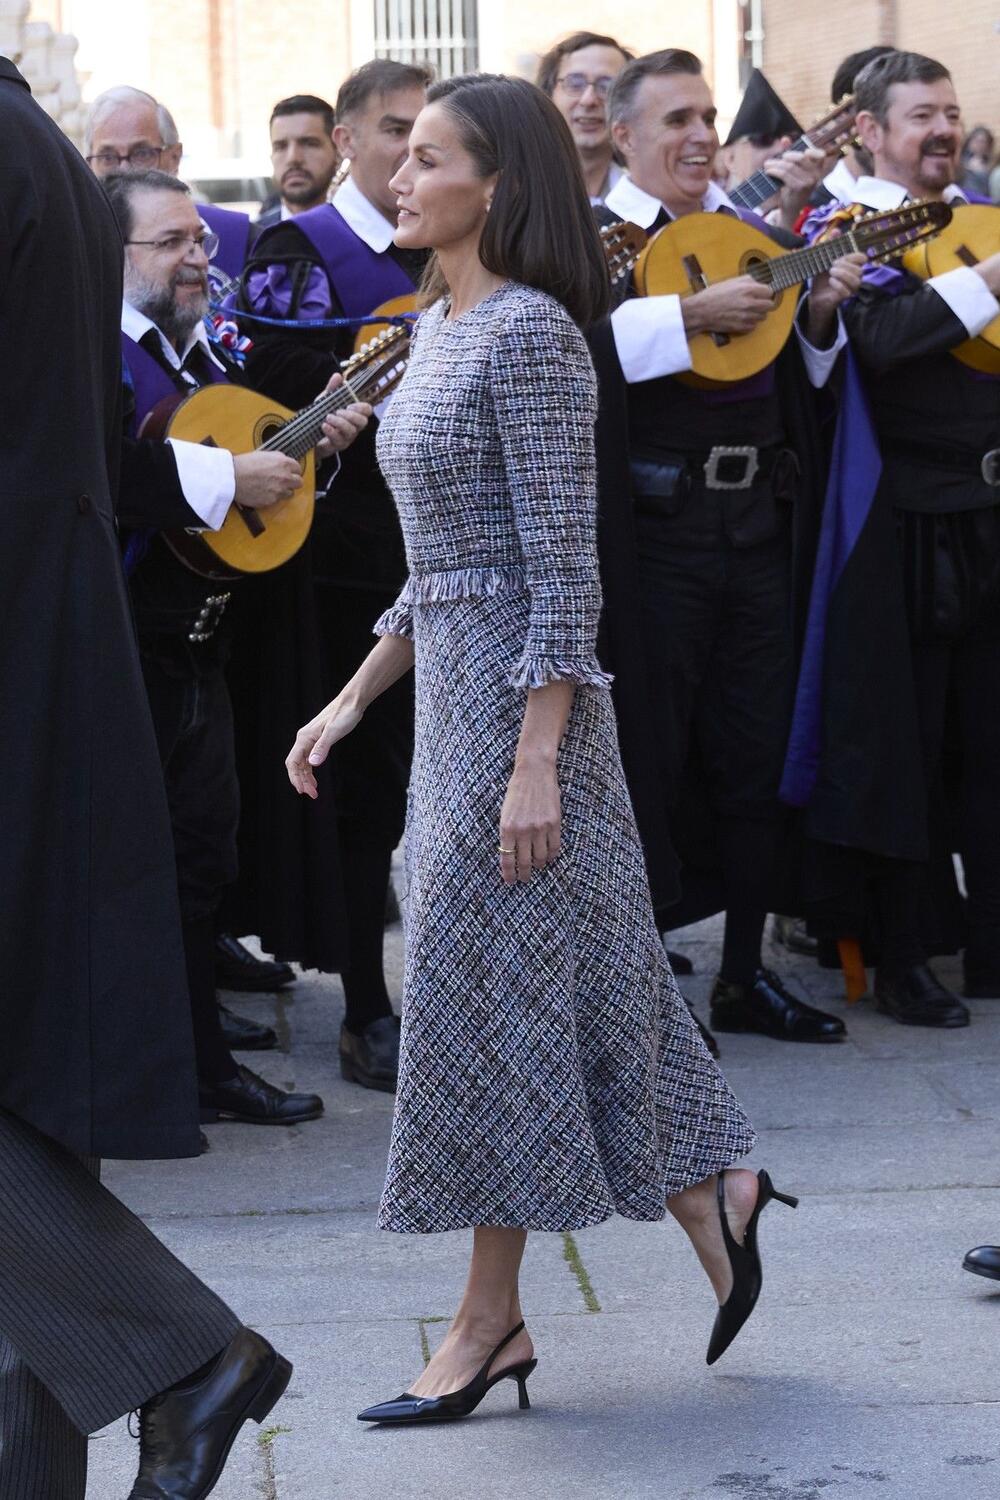 Crne slingback cipele kraljice Leticije od Španije